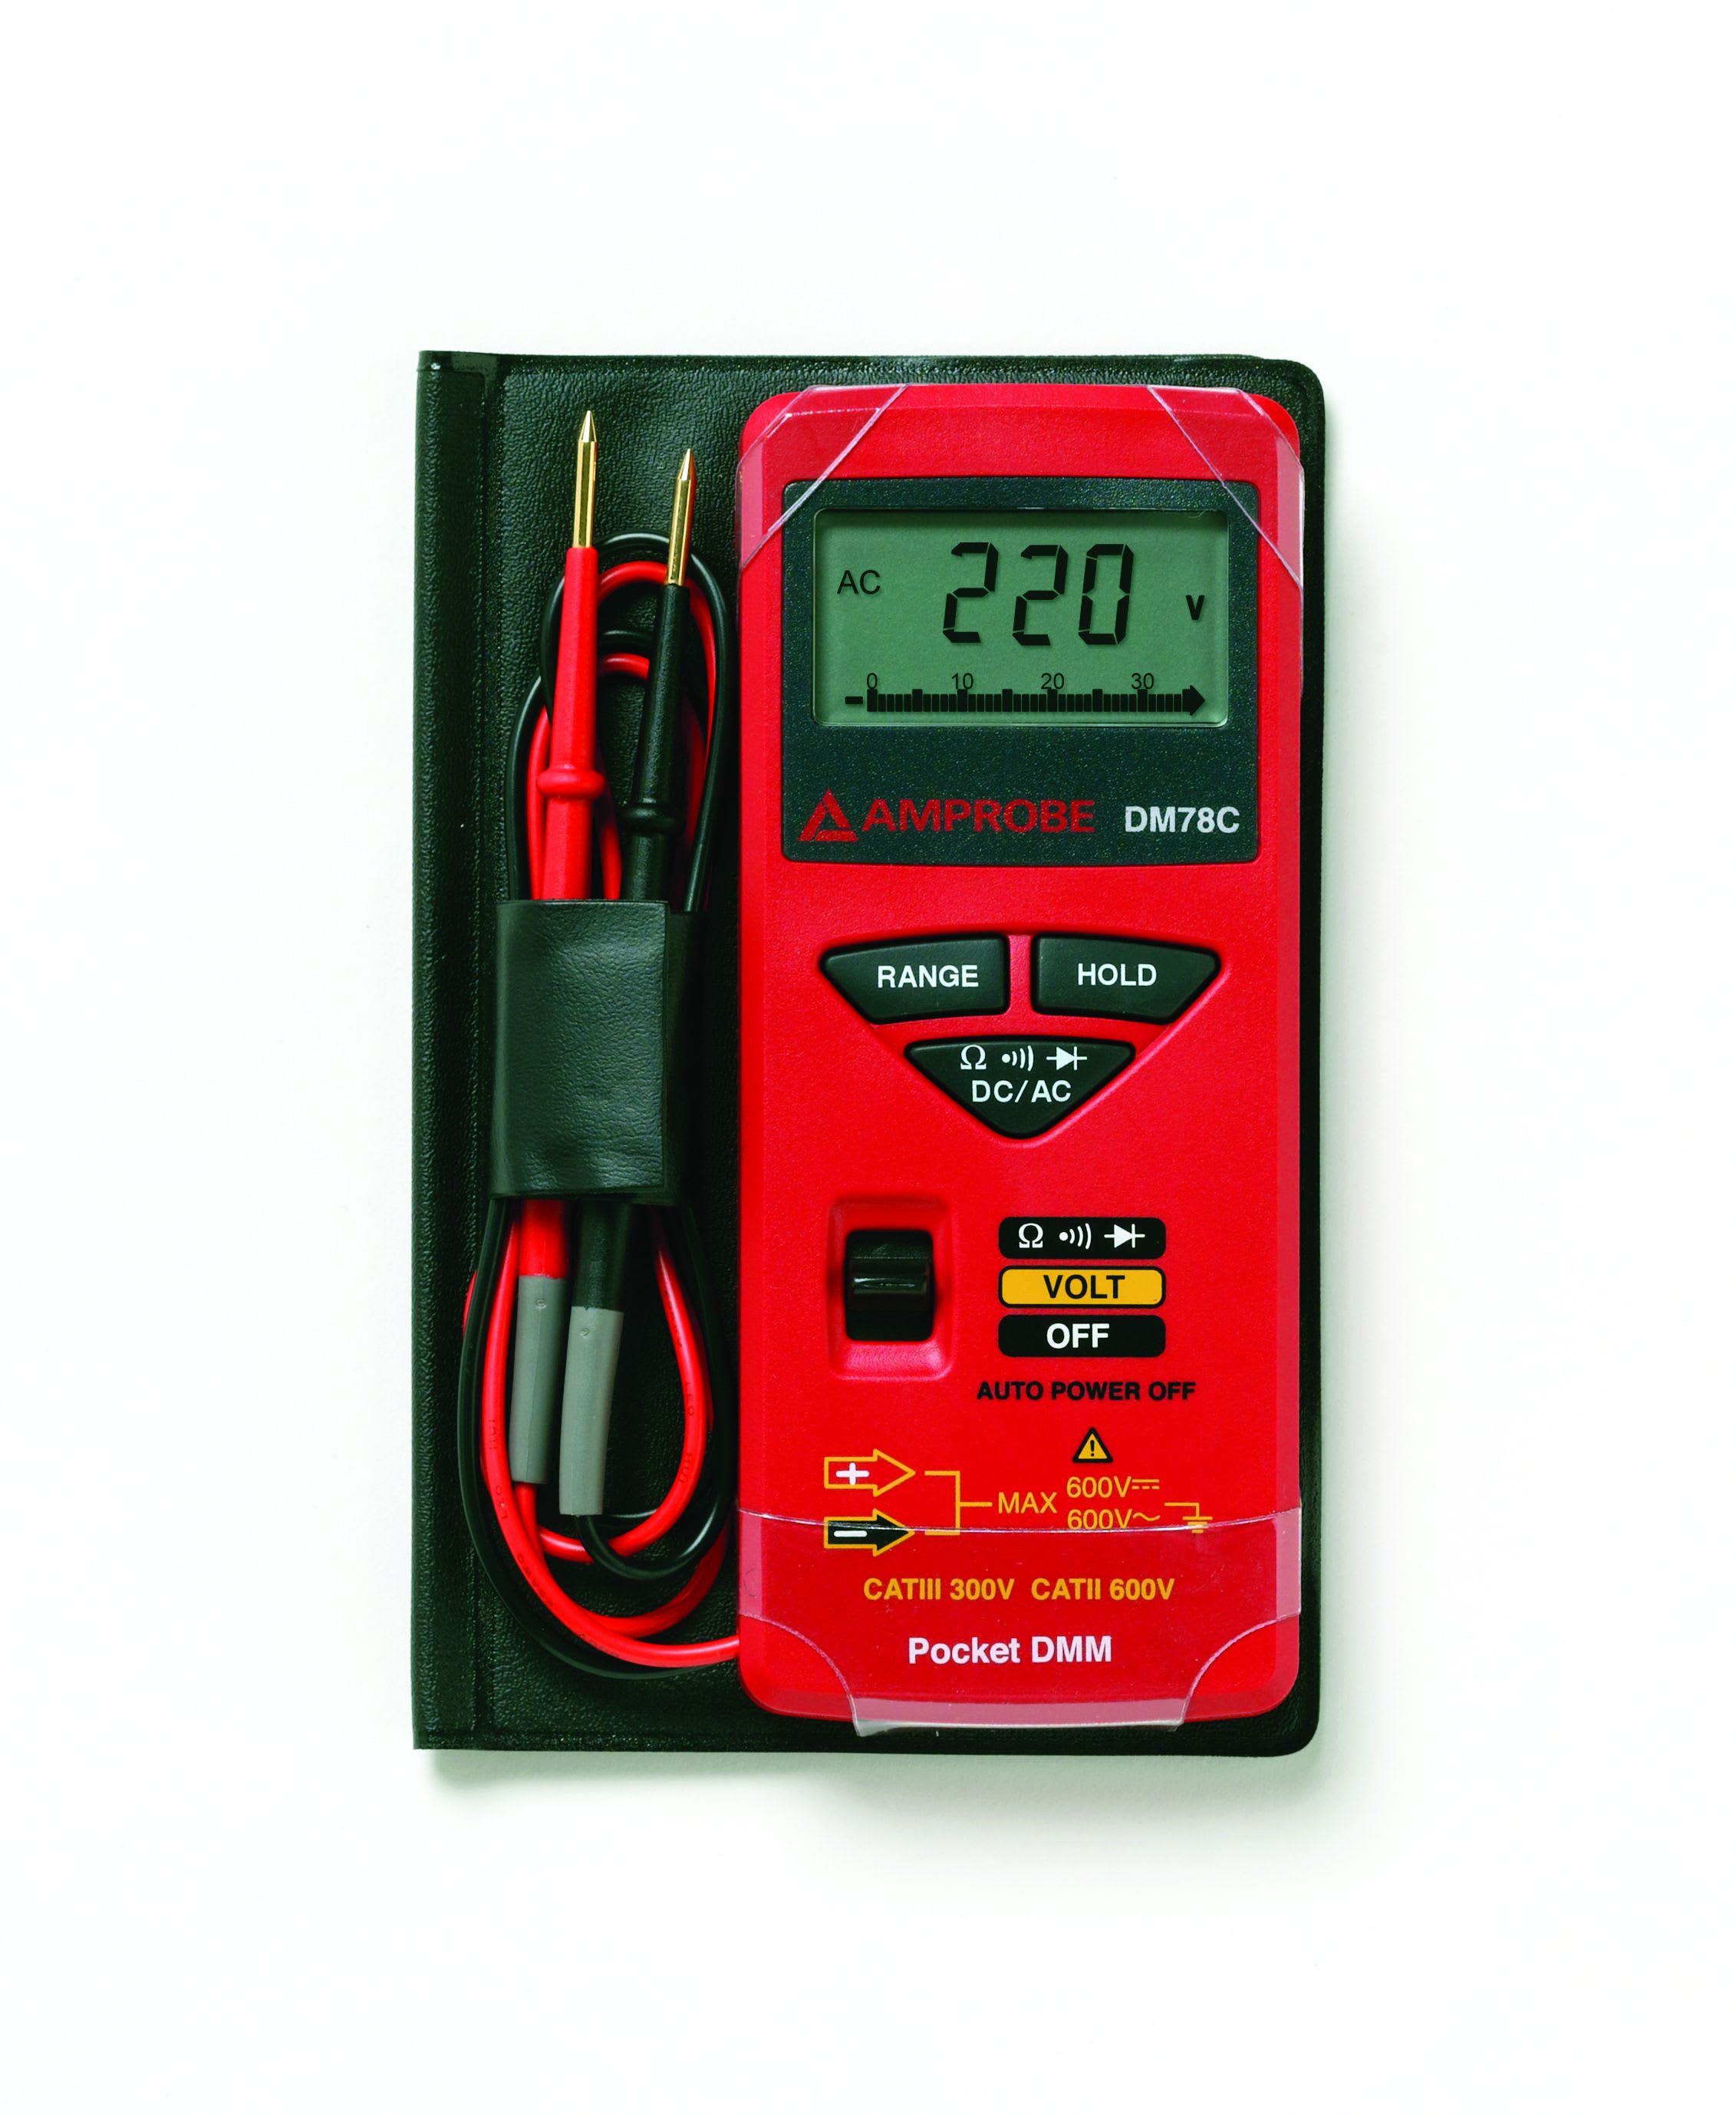 Fluke - DM78C multimètre numérique de poche dans un boitier de protection.